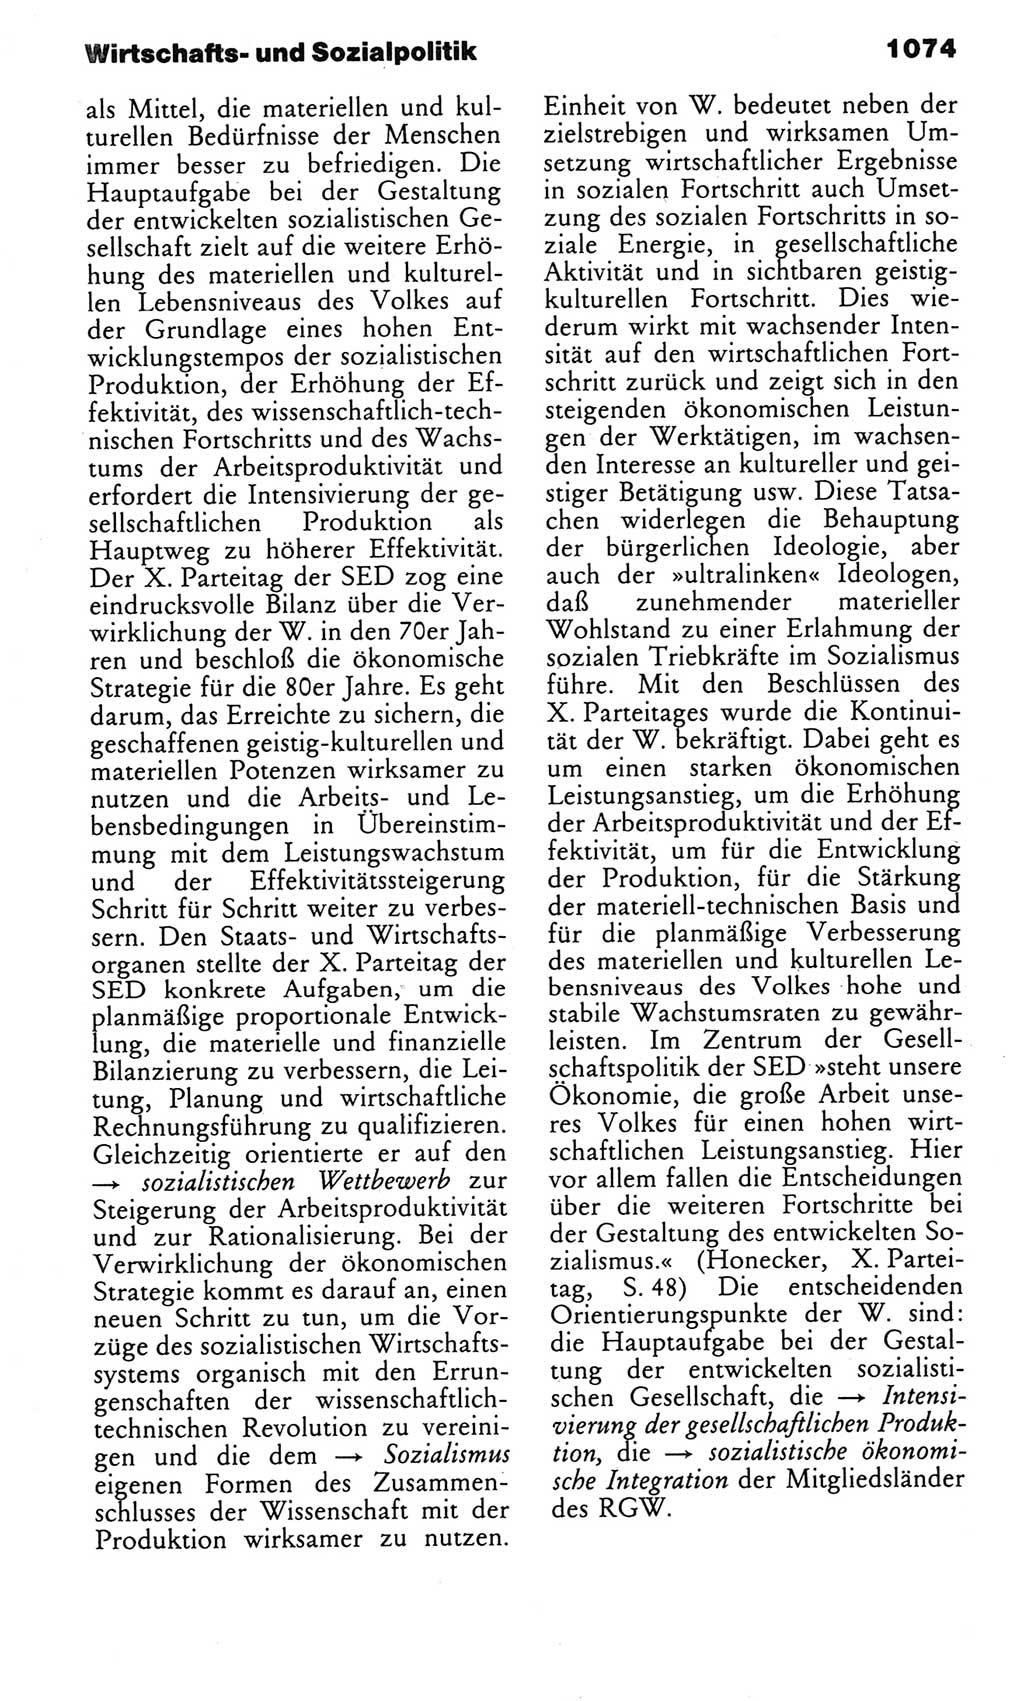 Kleines politisches Wörterbuch [Deutsche Demokratische Republik (DDR)] 1983, Seite 1074 (Kl. pol. Wb. DDR 1983, S. 1074)